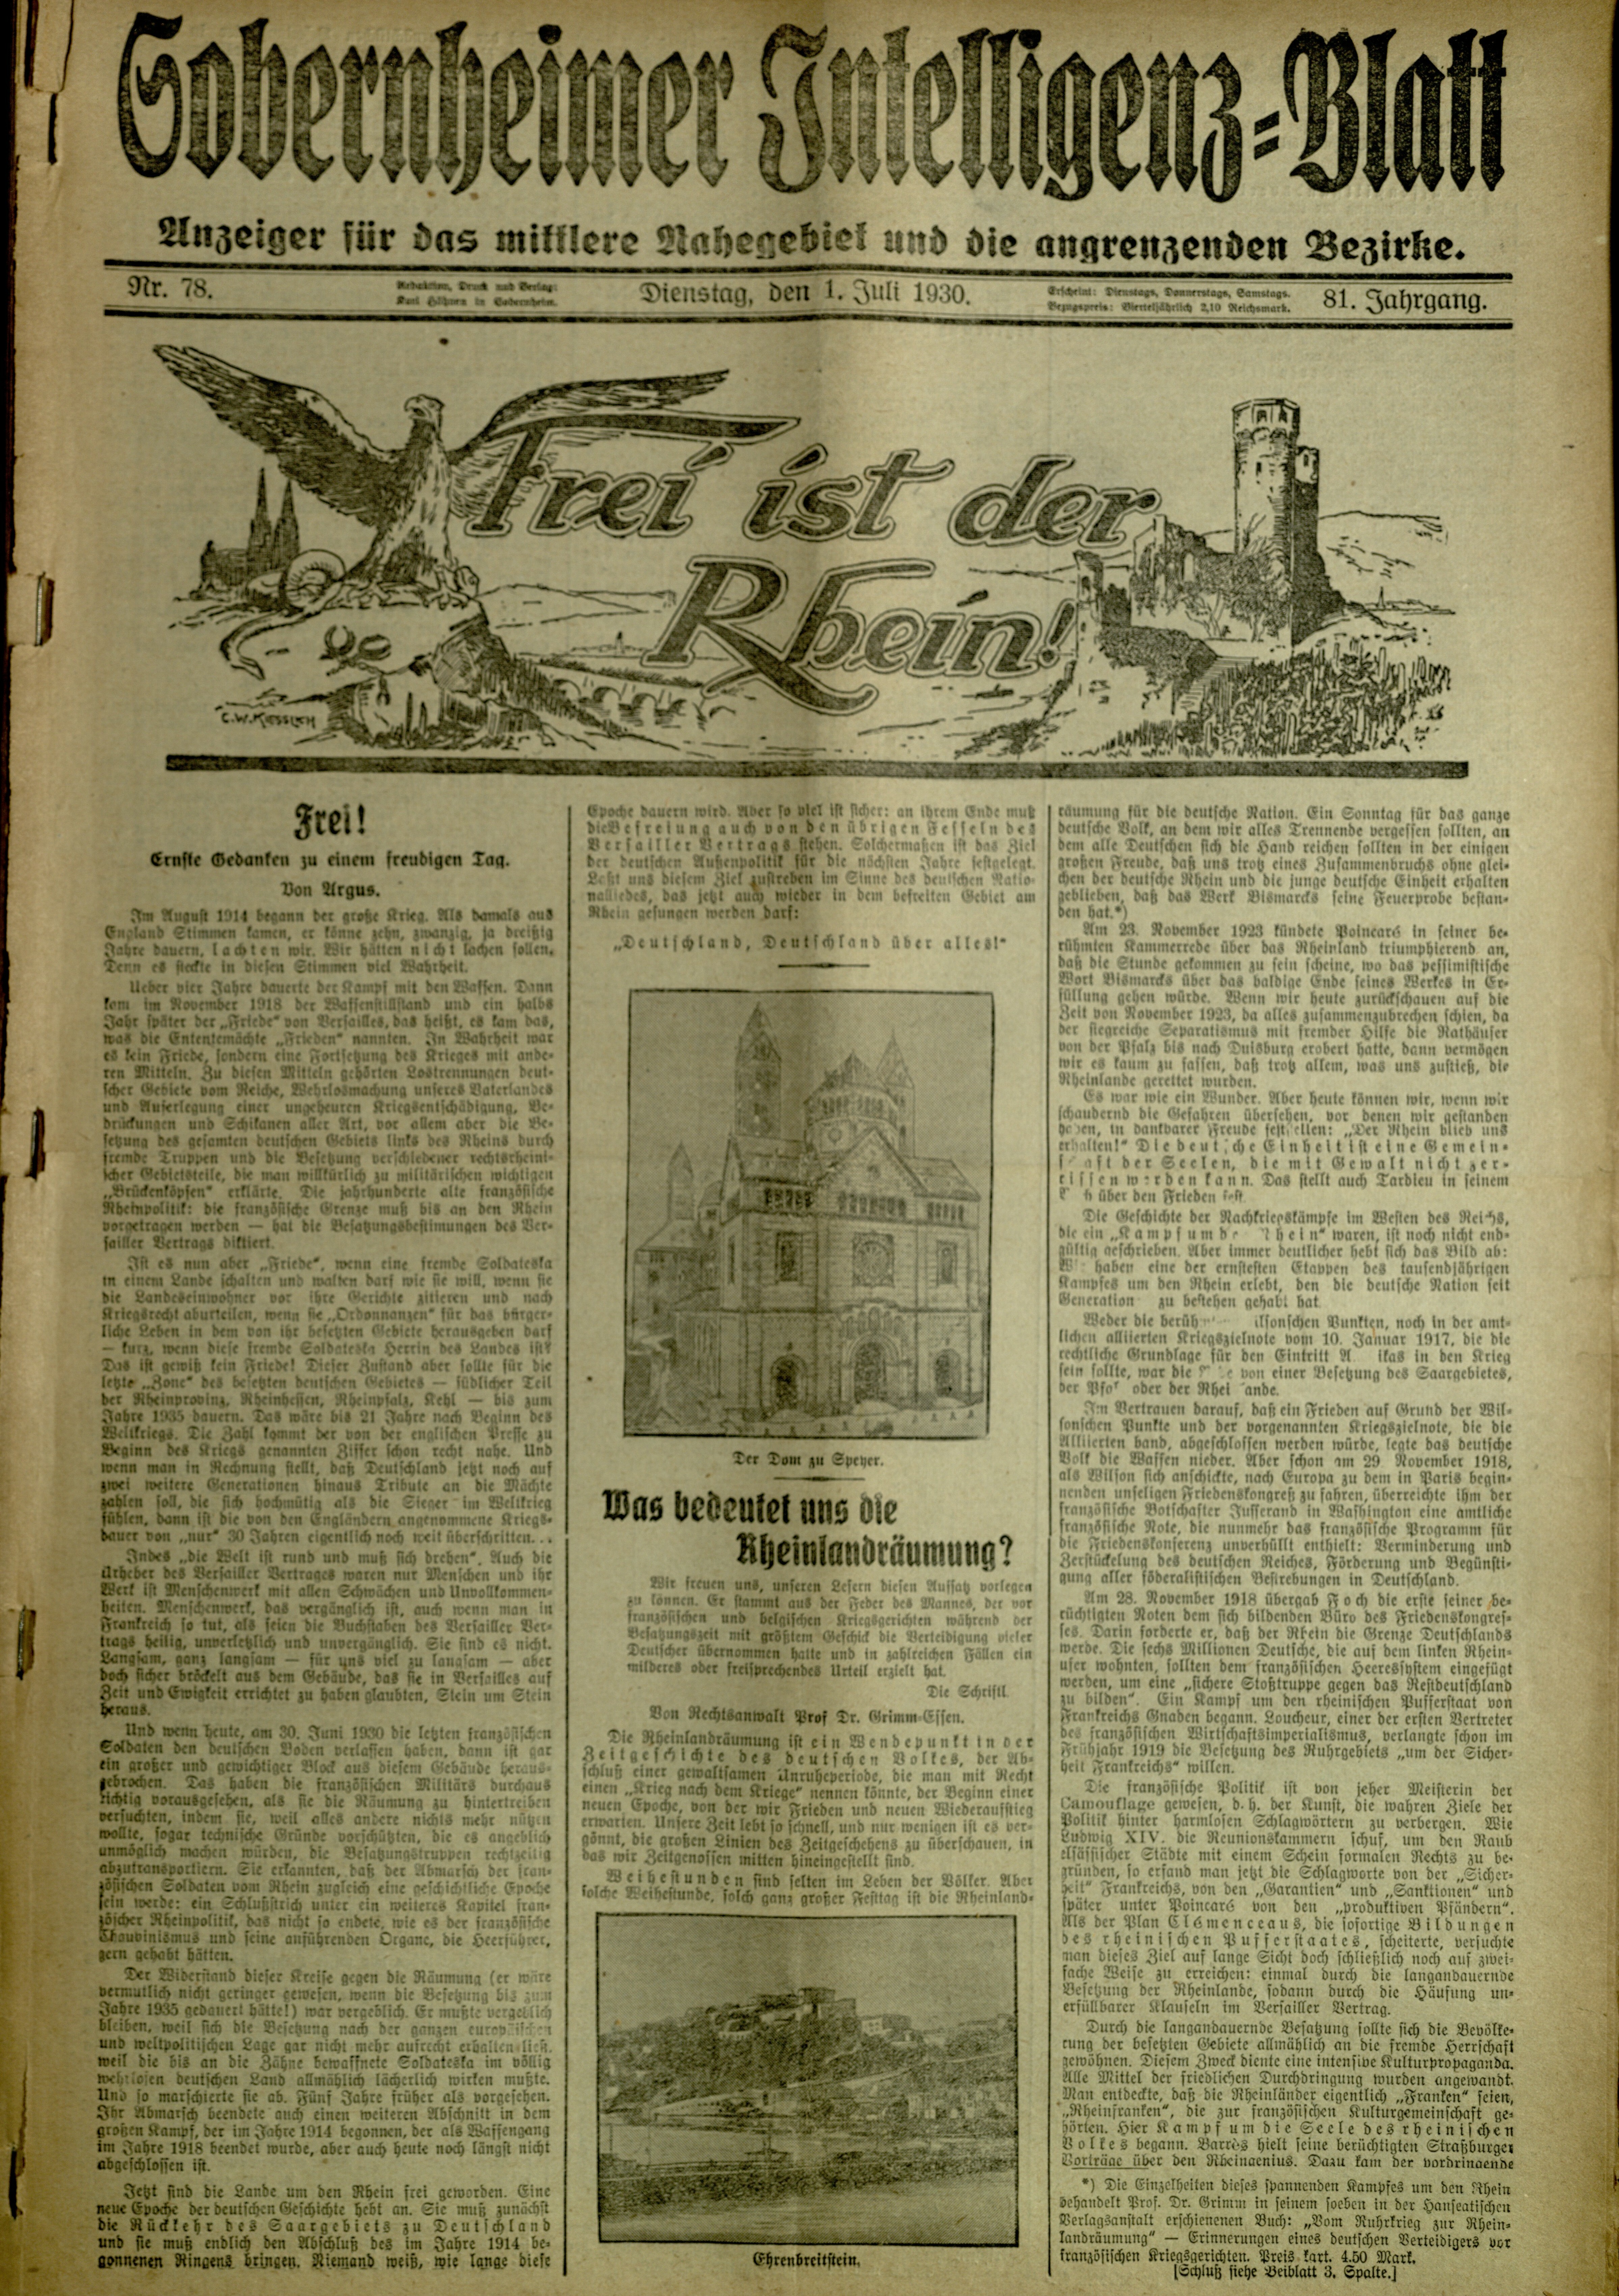 Zeitung: Sobernheimer Intelligenzblatt; Juli 1930, Jg. 81 Nr. 78 (Heimatmuseum Bad Sobernheim CC BY-NC-SA)